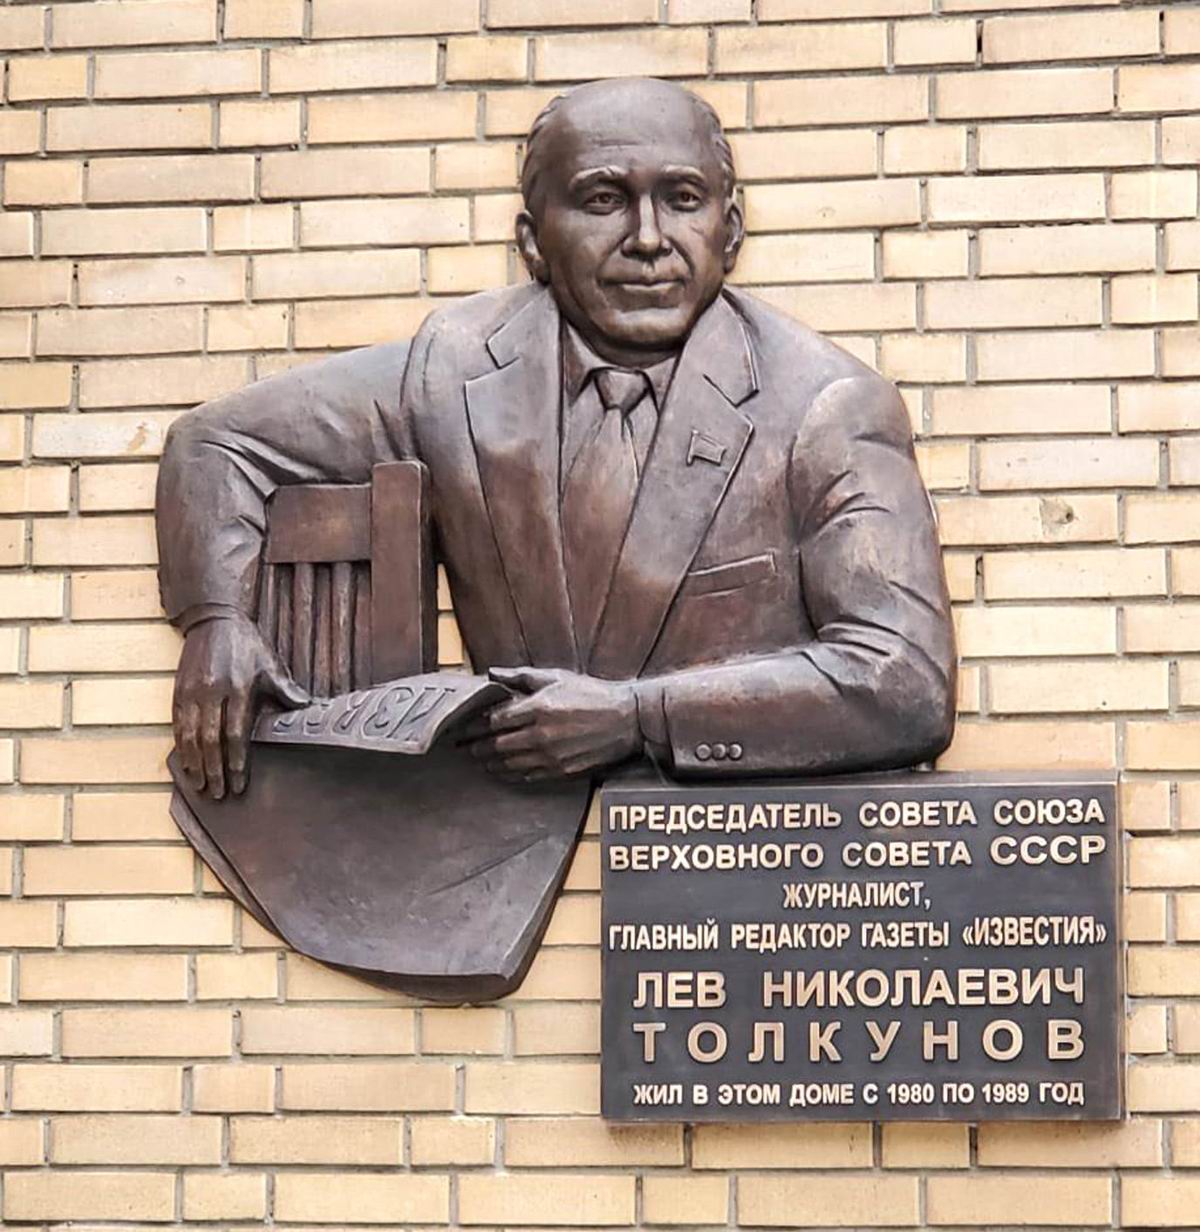 Мемориальная доска Толкунову Л.Н. (1919–1989), ск. М. и В. Согояны, в Гранатном переулке, дом 10, открыта 3.12.2019.